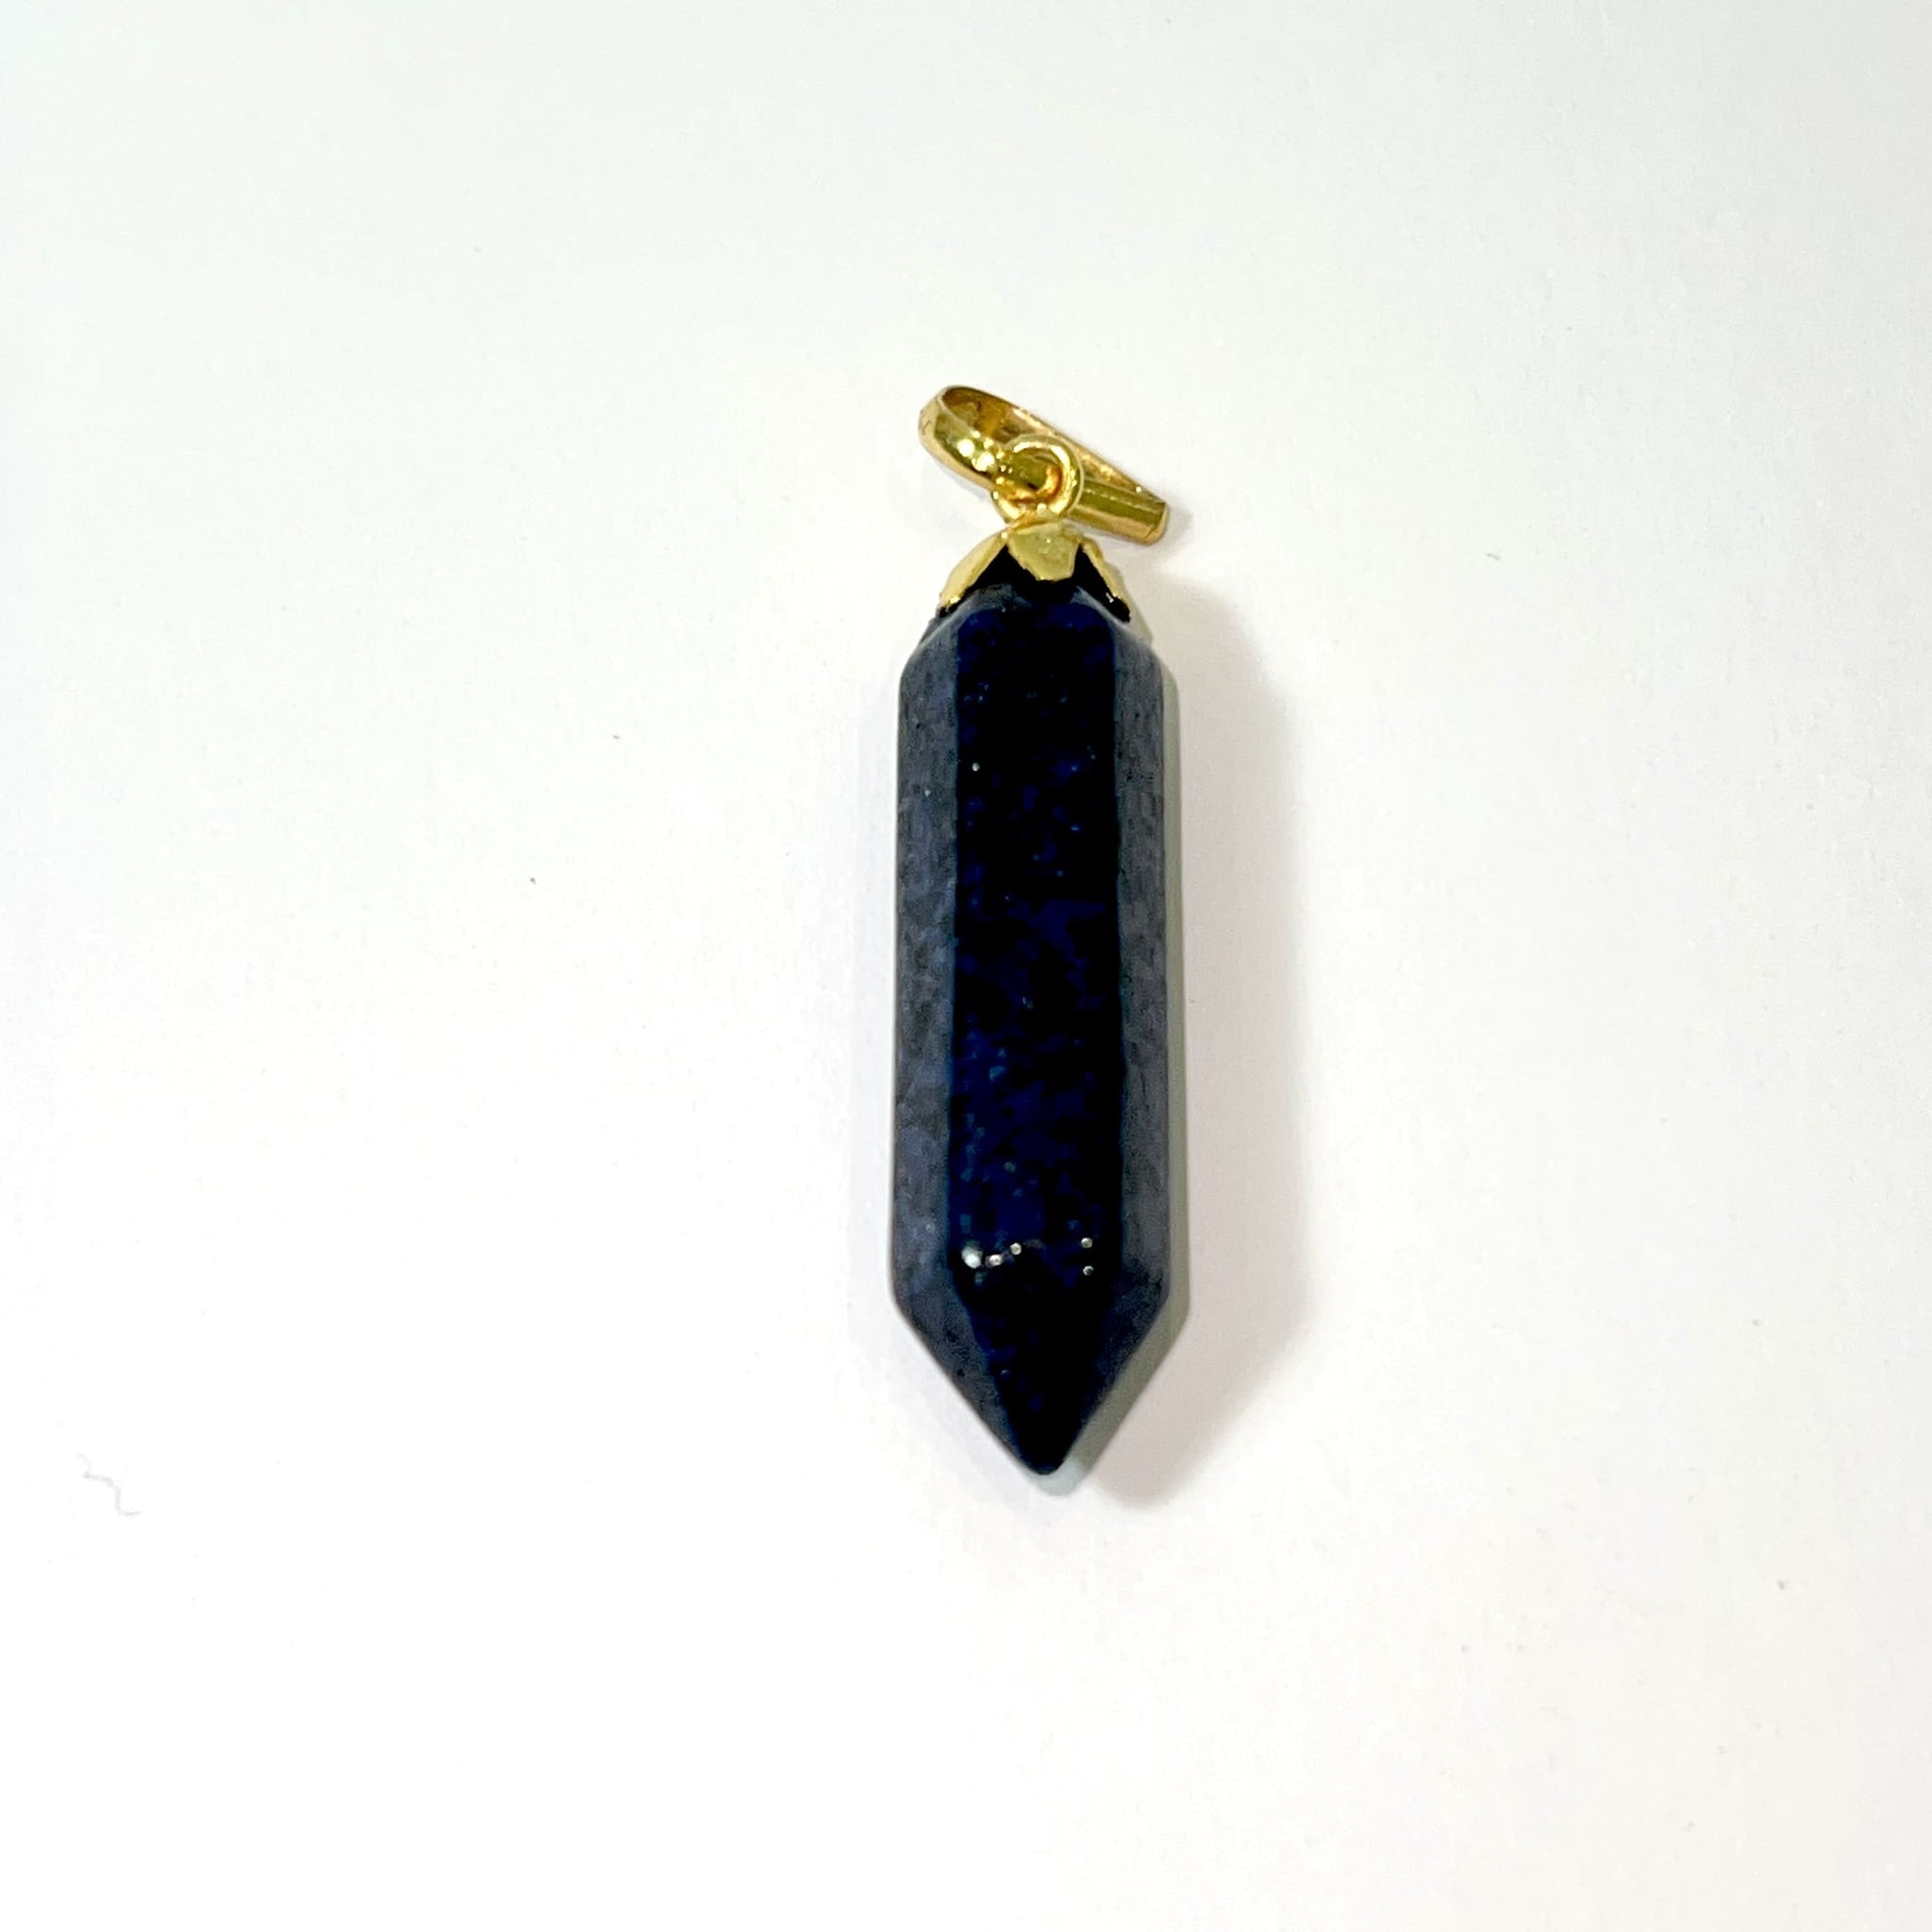 Double-ended Pendant Lapis Lazuli - 18 Carat Gold - 316